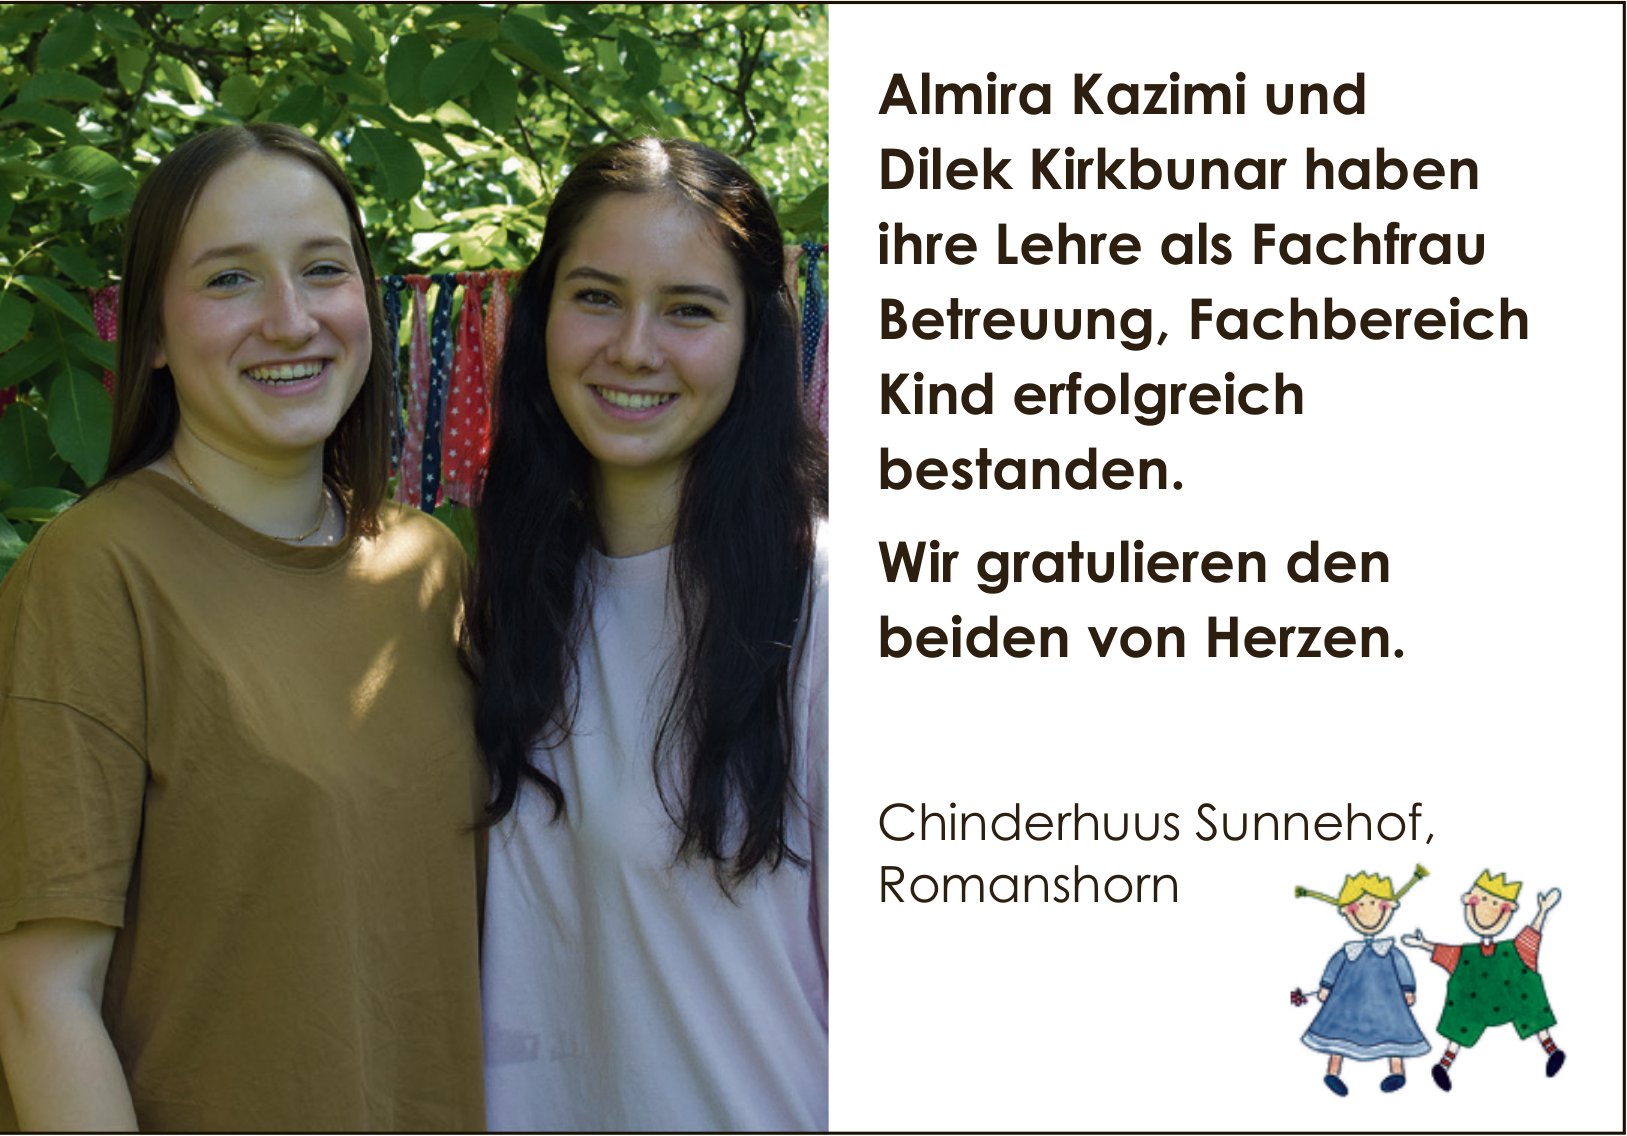 Chinderhuus Sunnehof, Romanshorn, Almira Kazimi und Dilek Kirkbunar haben ihre Lehre als Fachfrau Betreuung,  Fachbereich Kind erfolgreich bestanden.